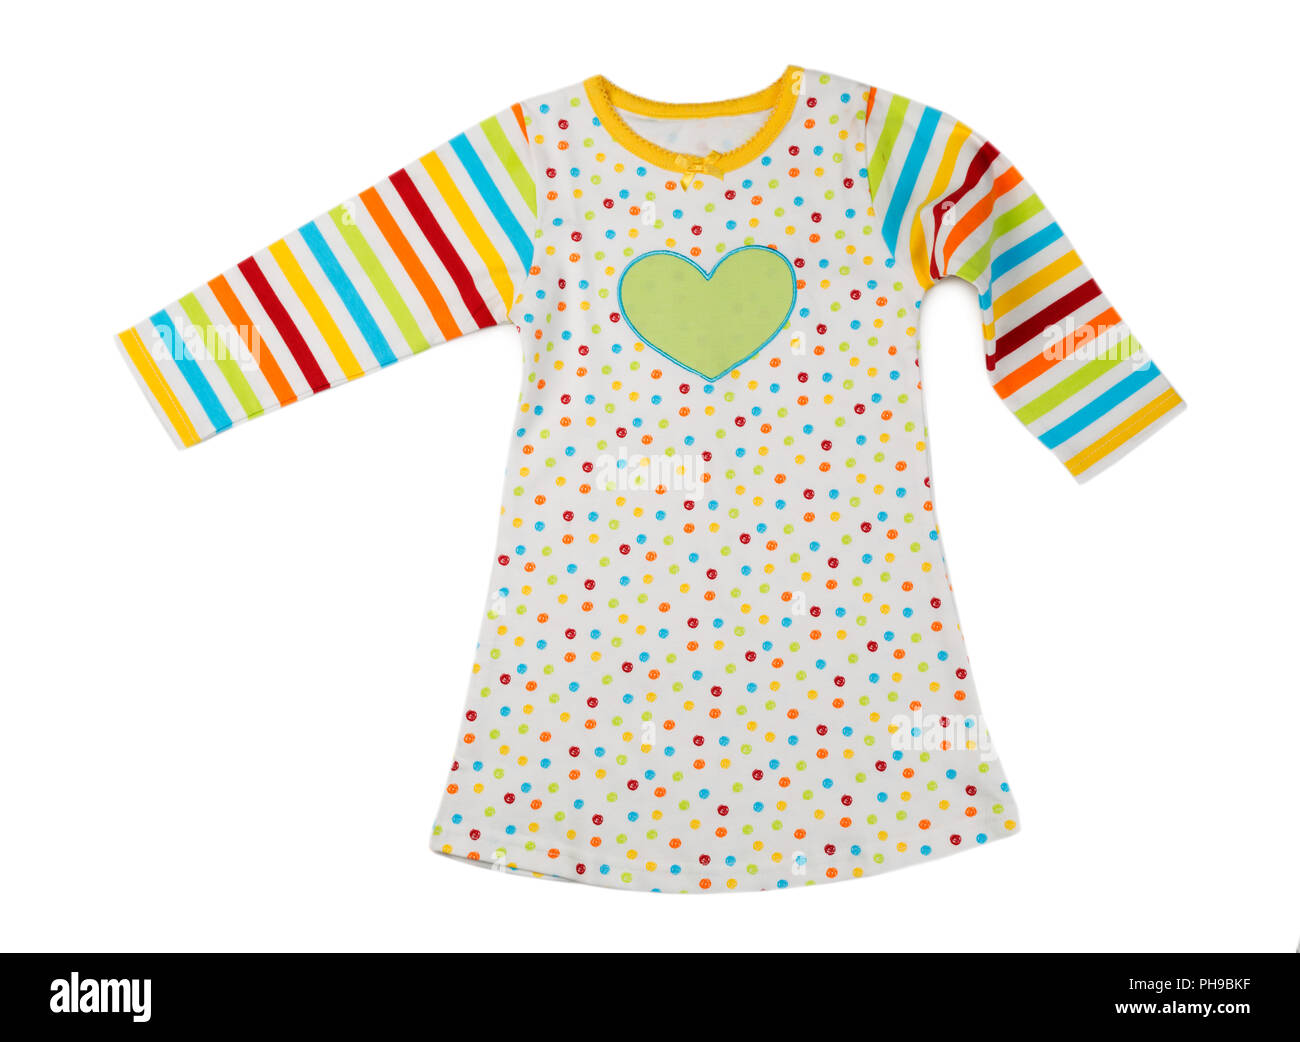 Striped baby dress Stock Photo - Alamy